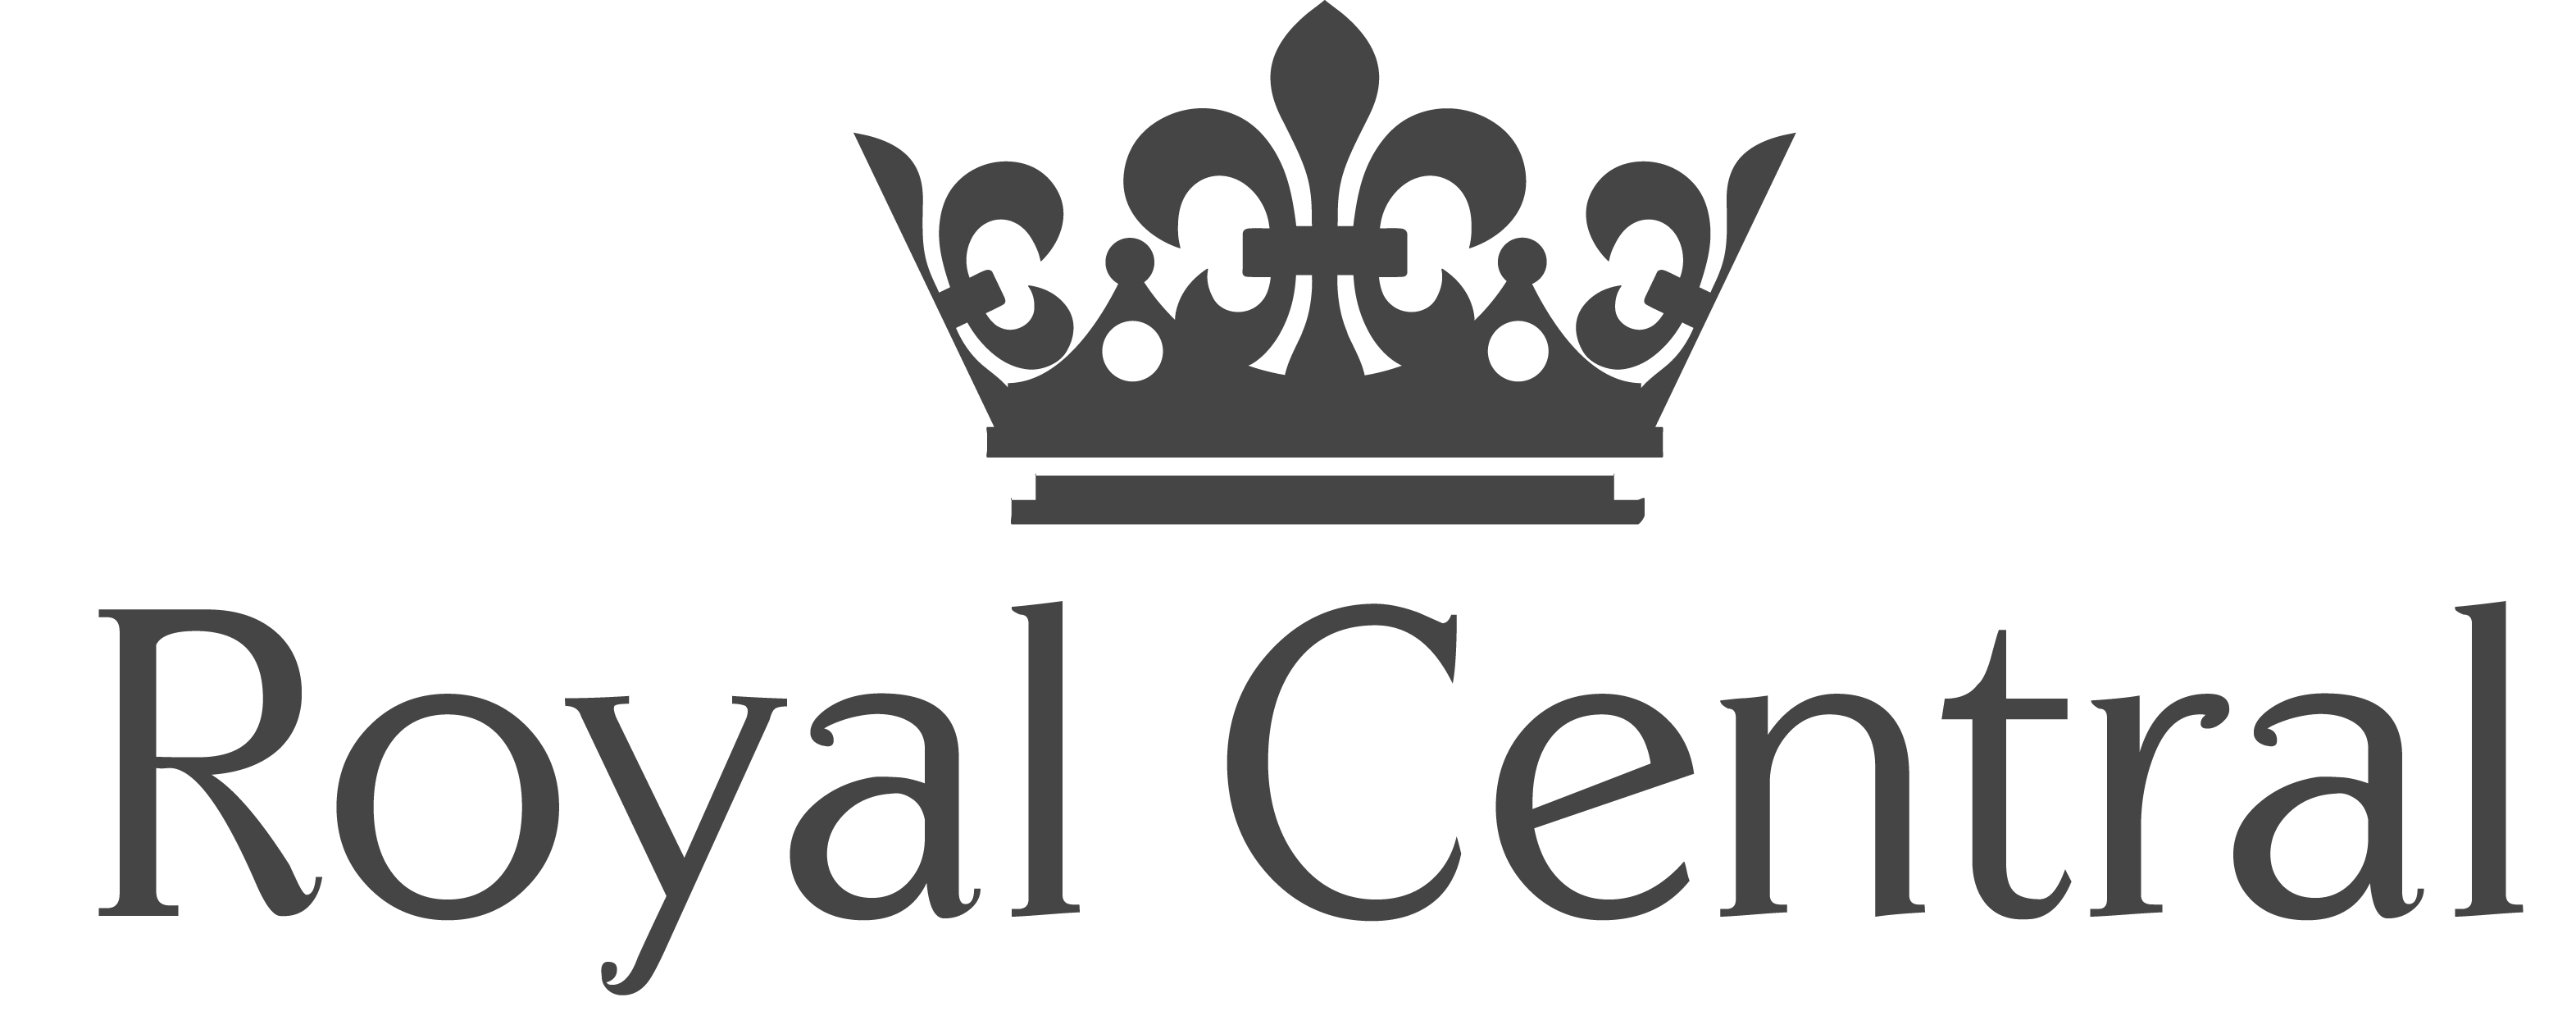 All Royals Logo - Kansas city royals crown logo graphic royalty free stock